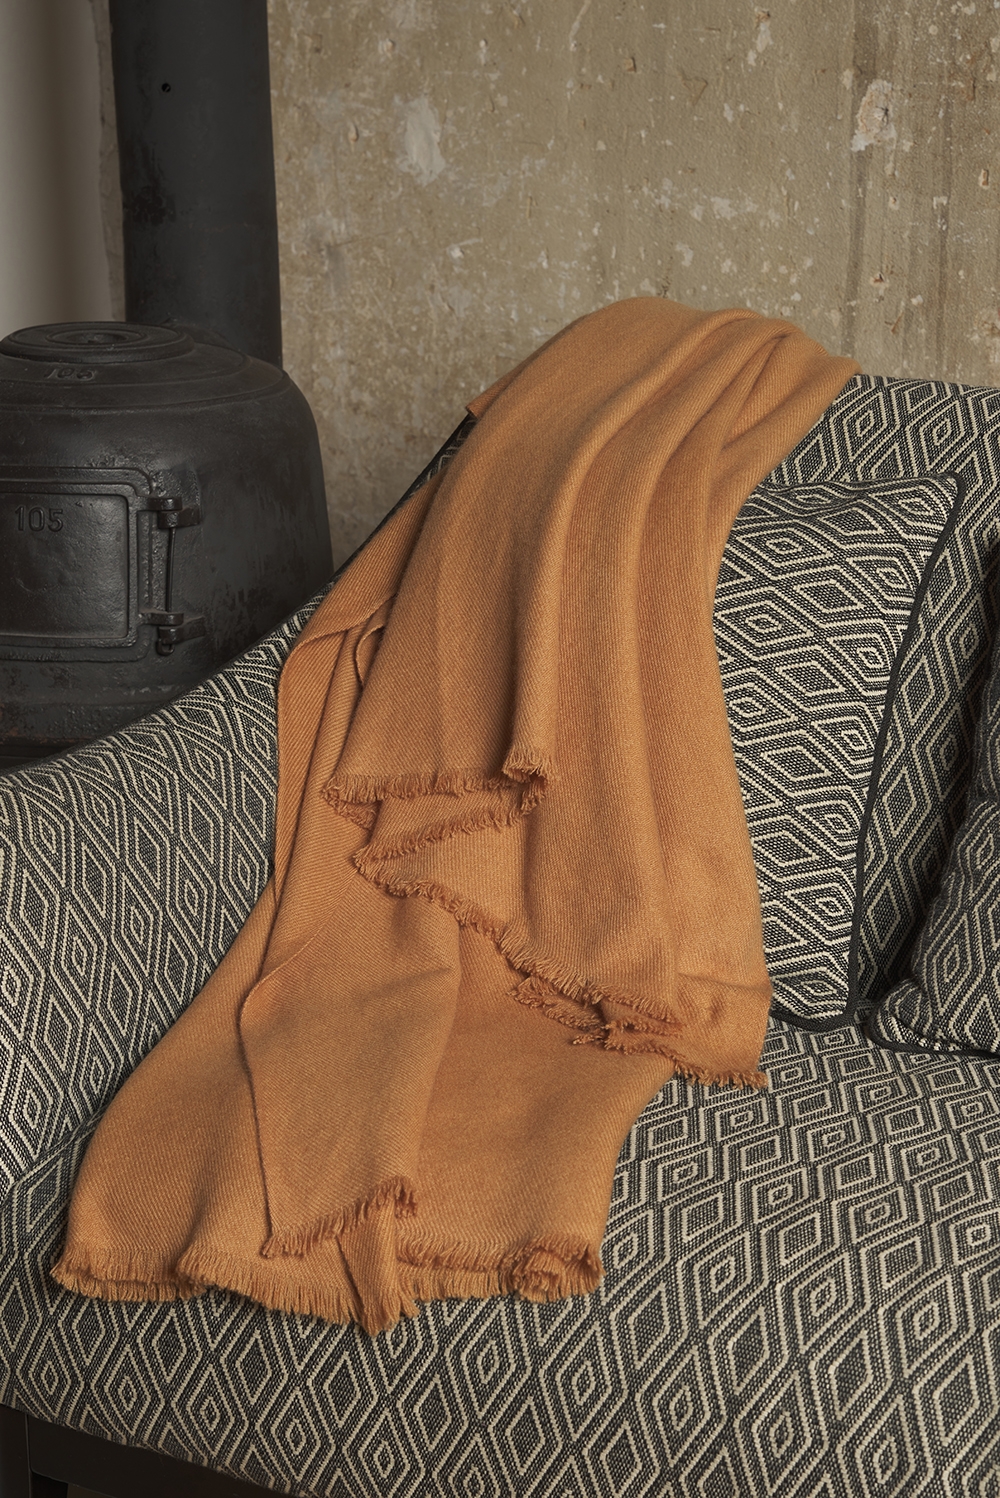 Cachemire accessoires couvertures plaids toodoo plain s 140 x 200 camel desert 140 x 200 cm